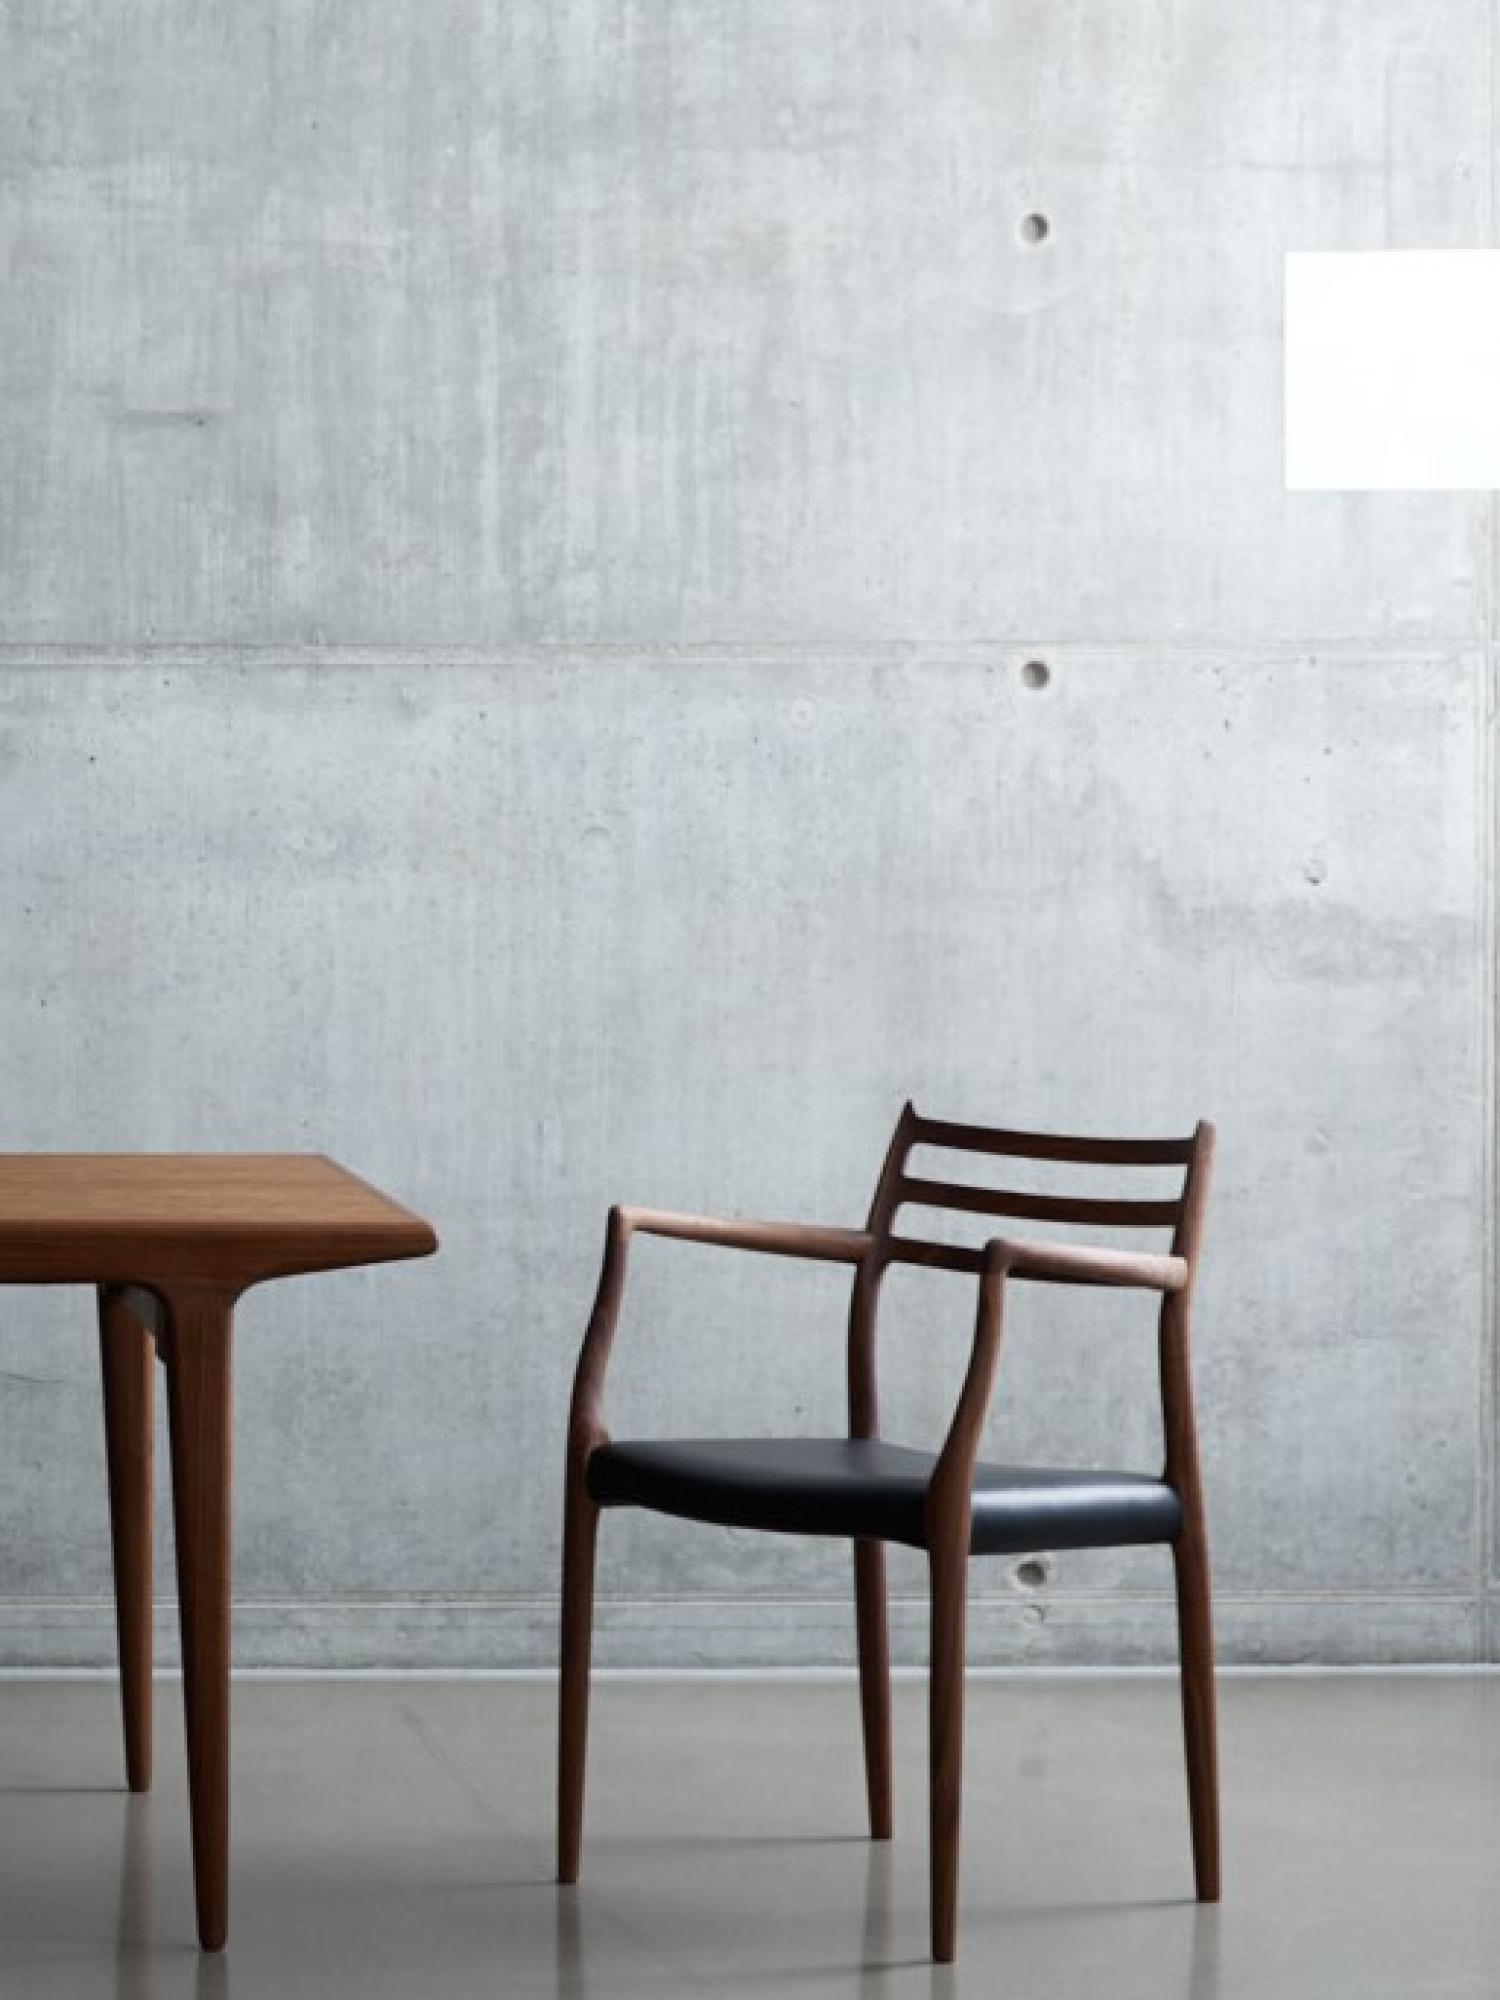 Moller handgemaakte stoelen door villa interno Kortrijk heule